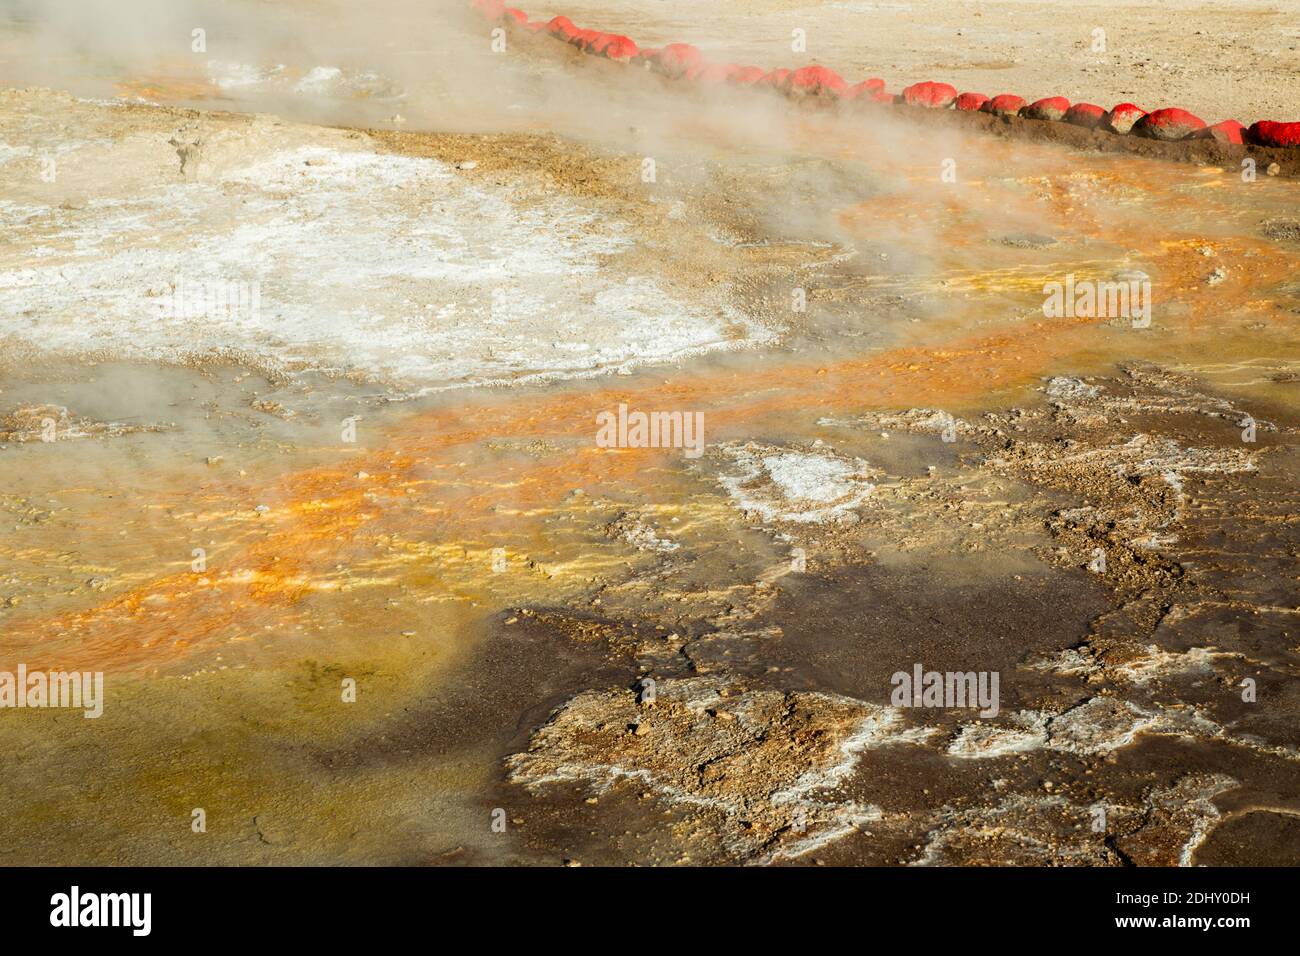 Rote Steine umschließen Blattflüsse, die gelben Schwefel und andere Mineralien auf El Tatio Geysir Feld und Geothermie Gebiet, die Anden, Chile Stockfoto